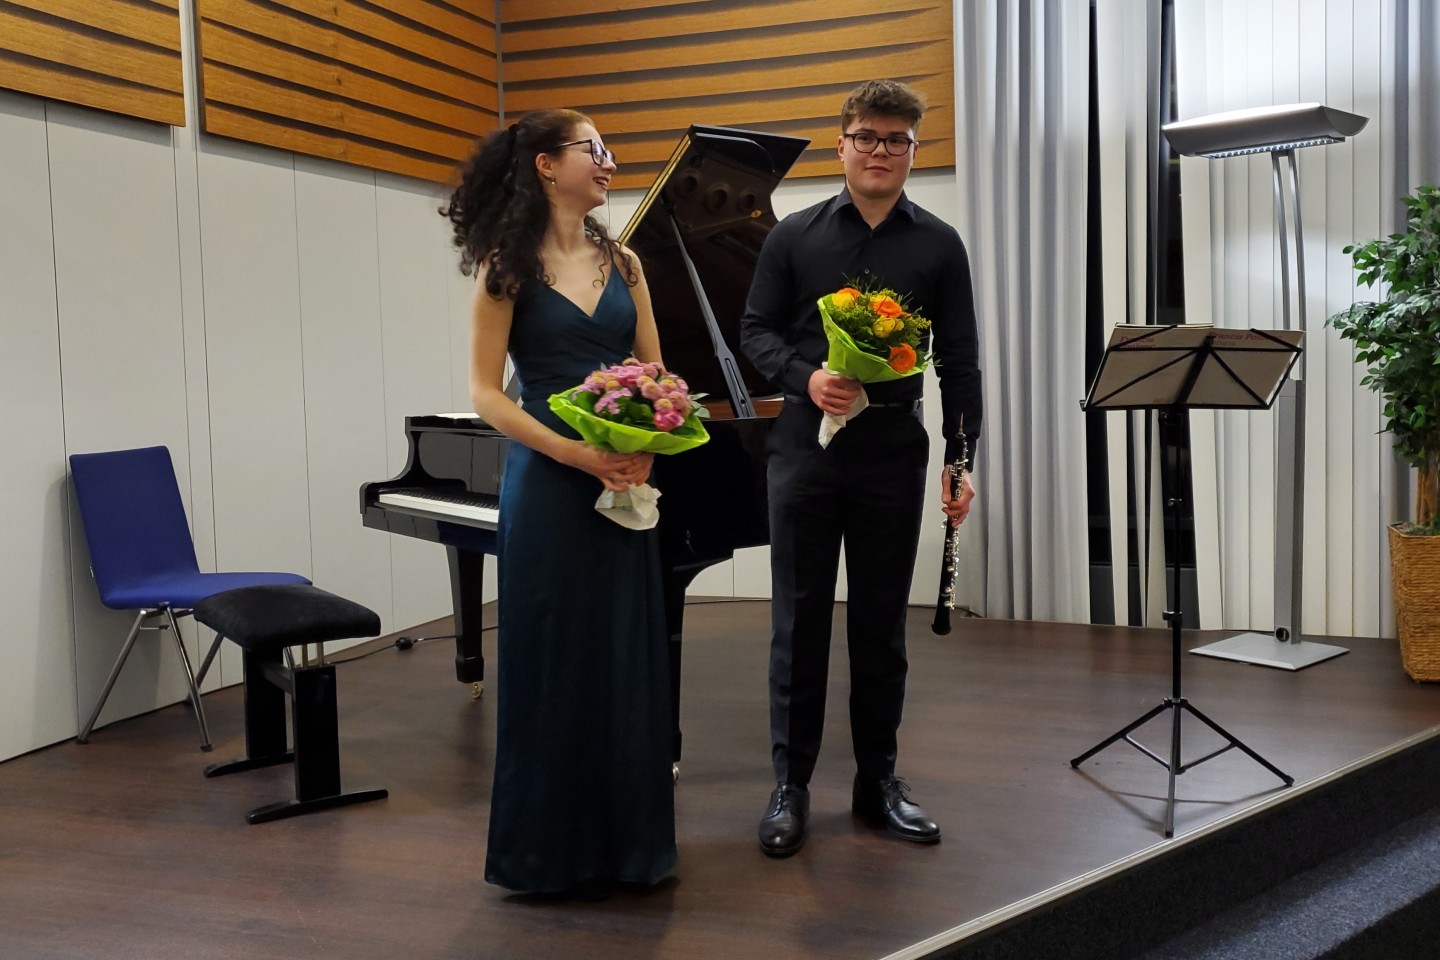 Ein Konzert- Rezital im Rathaussaal mit zwei jungen Künstlern an, die durch die Jürgen Ponto-Stiftung gefördert werden